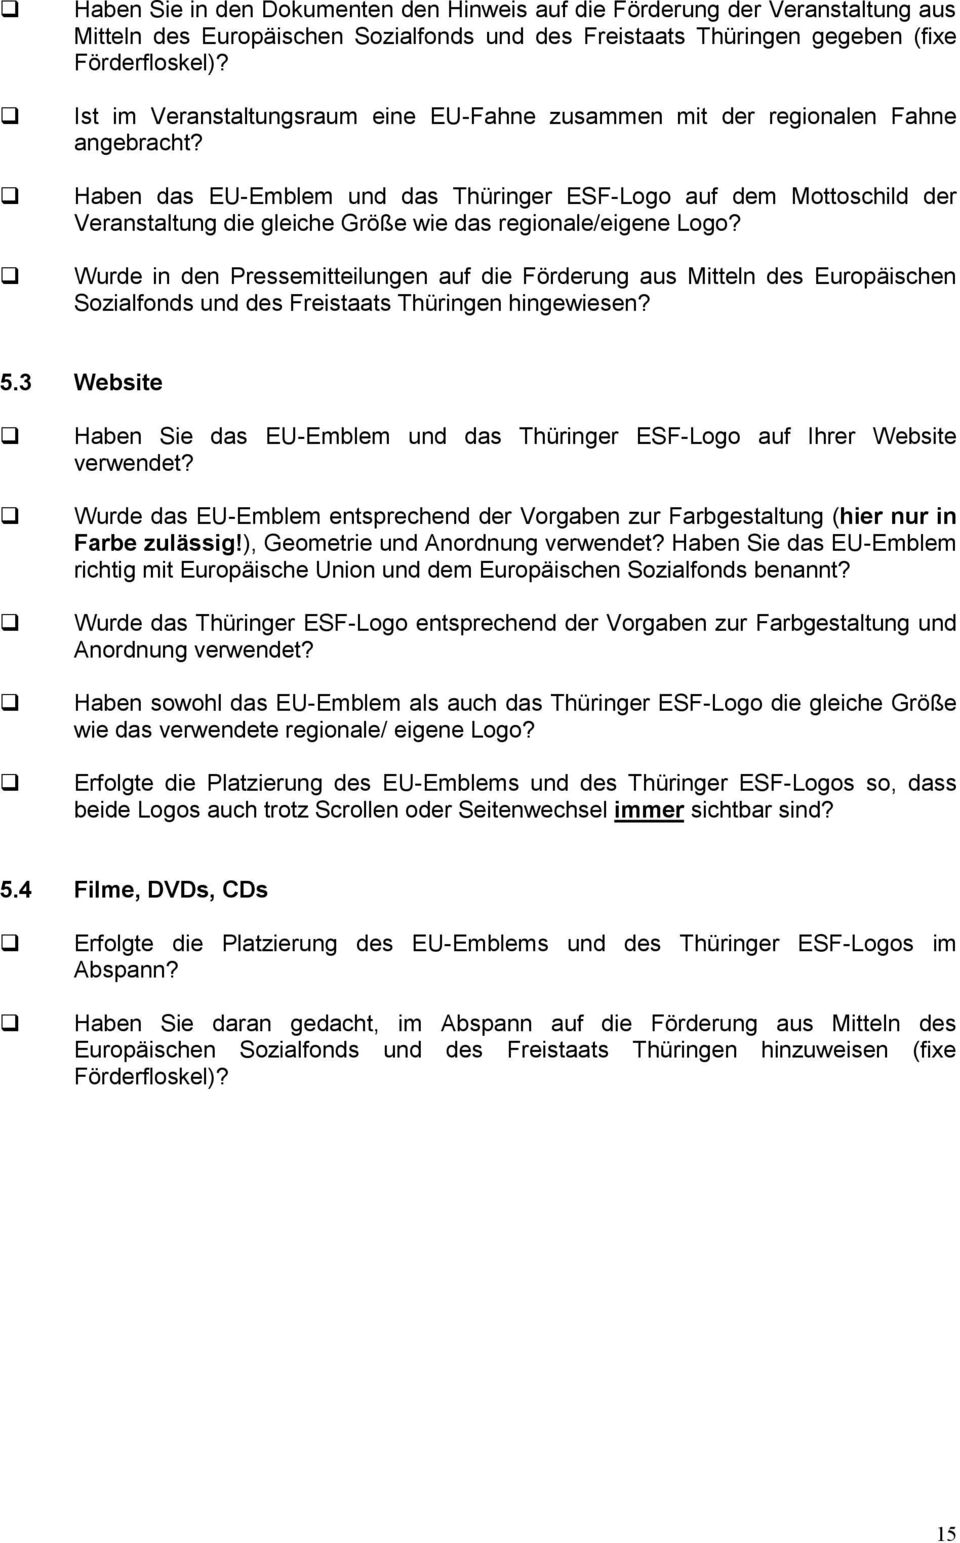 Haben das EU-Emblem und das Thüringer ESF-Logo auf dem Mottoschild der Veranstaltung die gleiche Größe wie das regionale/eigene Logo?